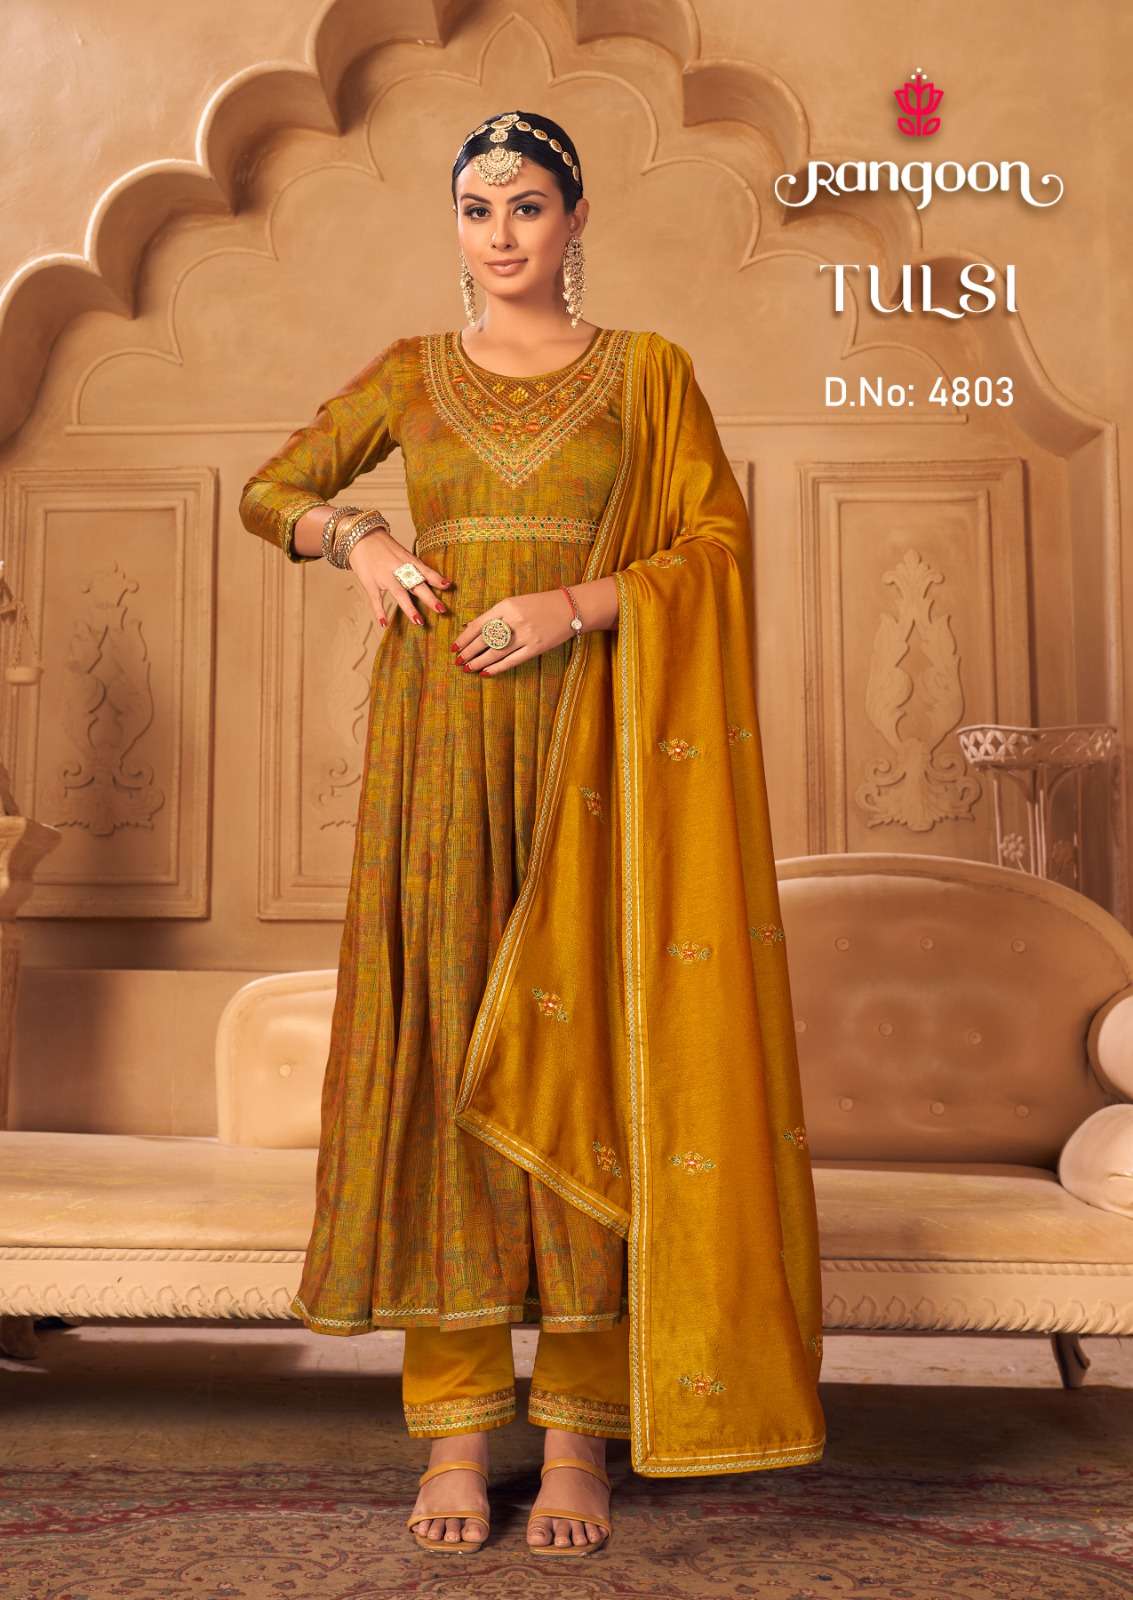 rangoon tulsi 4801-4804 series latest designer wear kurti wholesaler surat gujarat